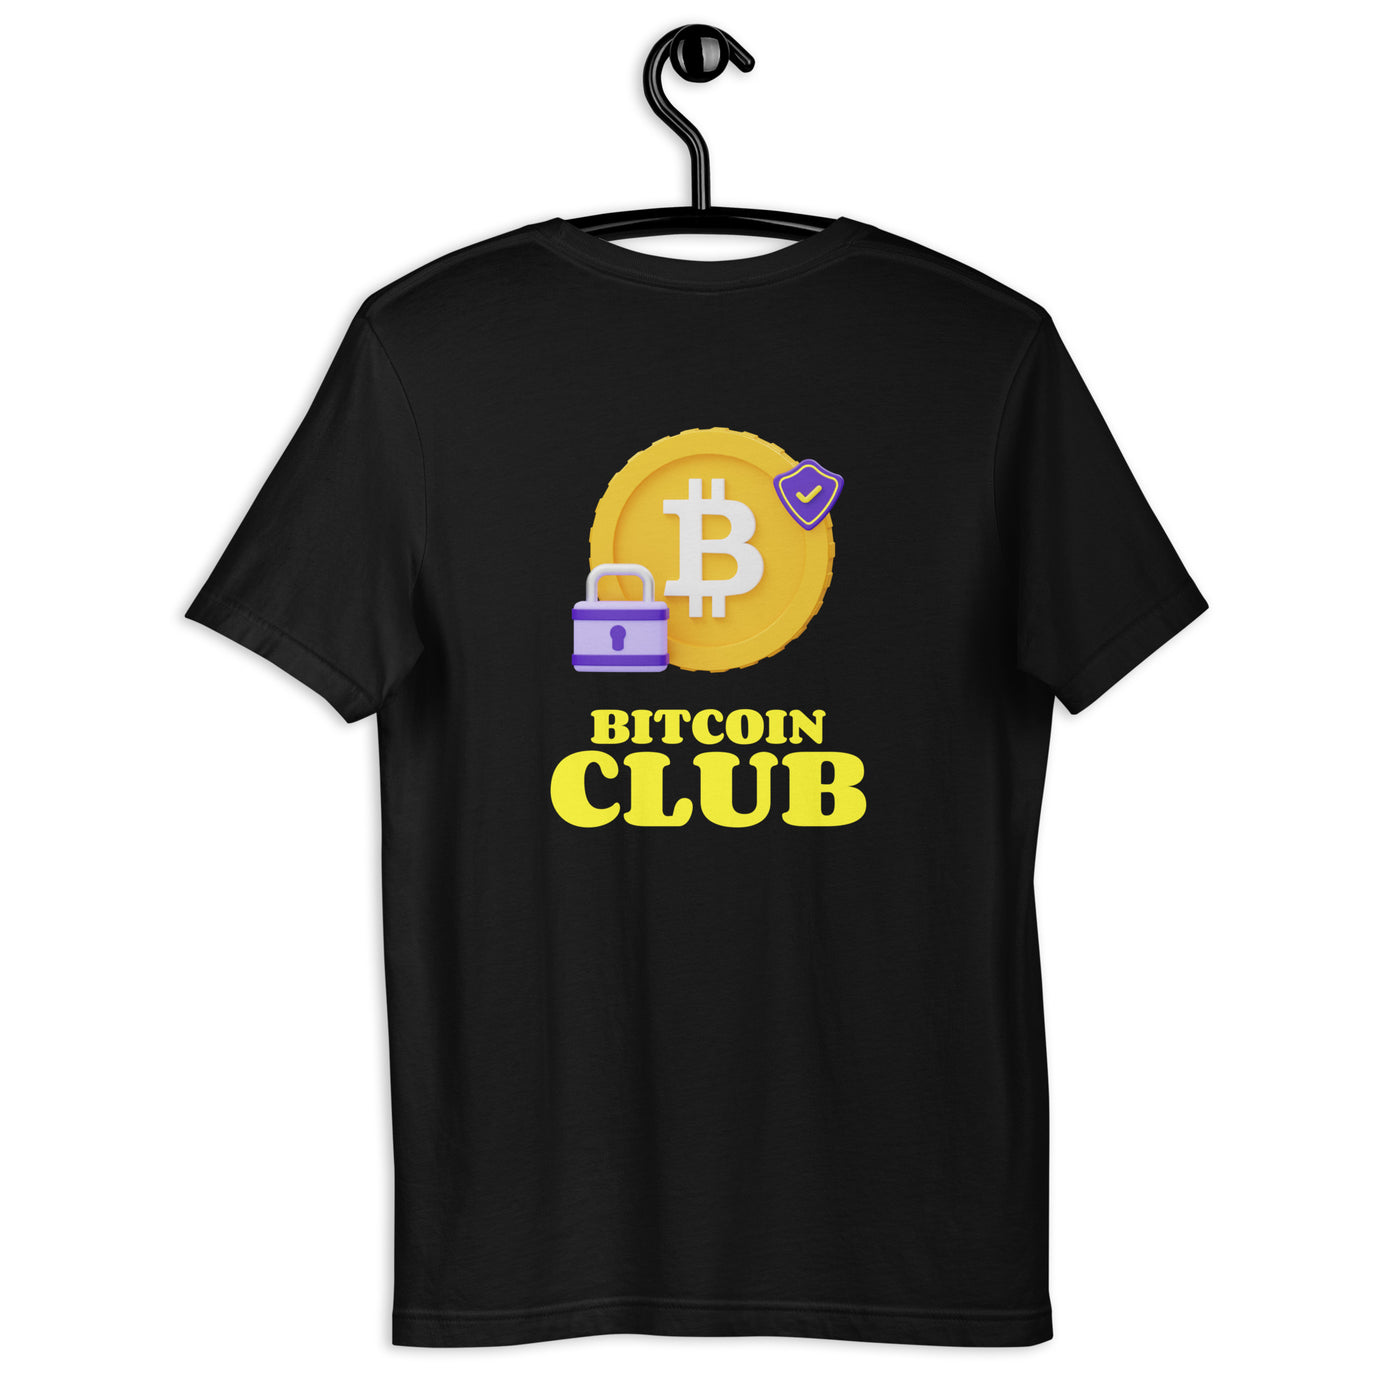 BITCOIN CLUB V7 - Unisex t-shirt ( Back Print )